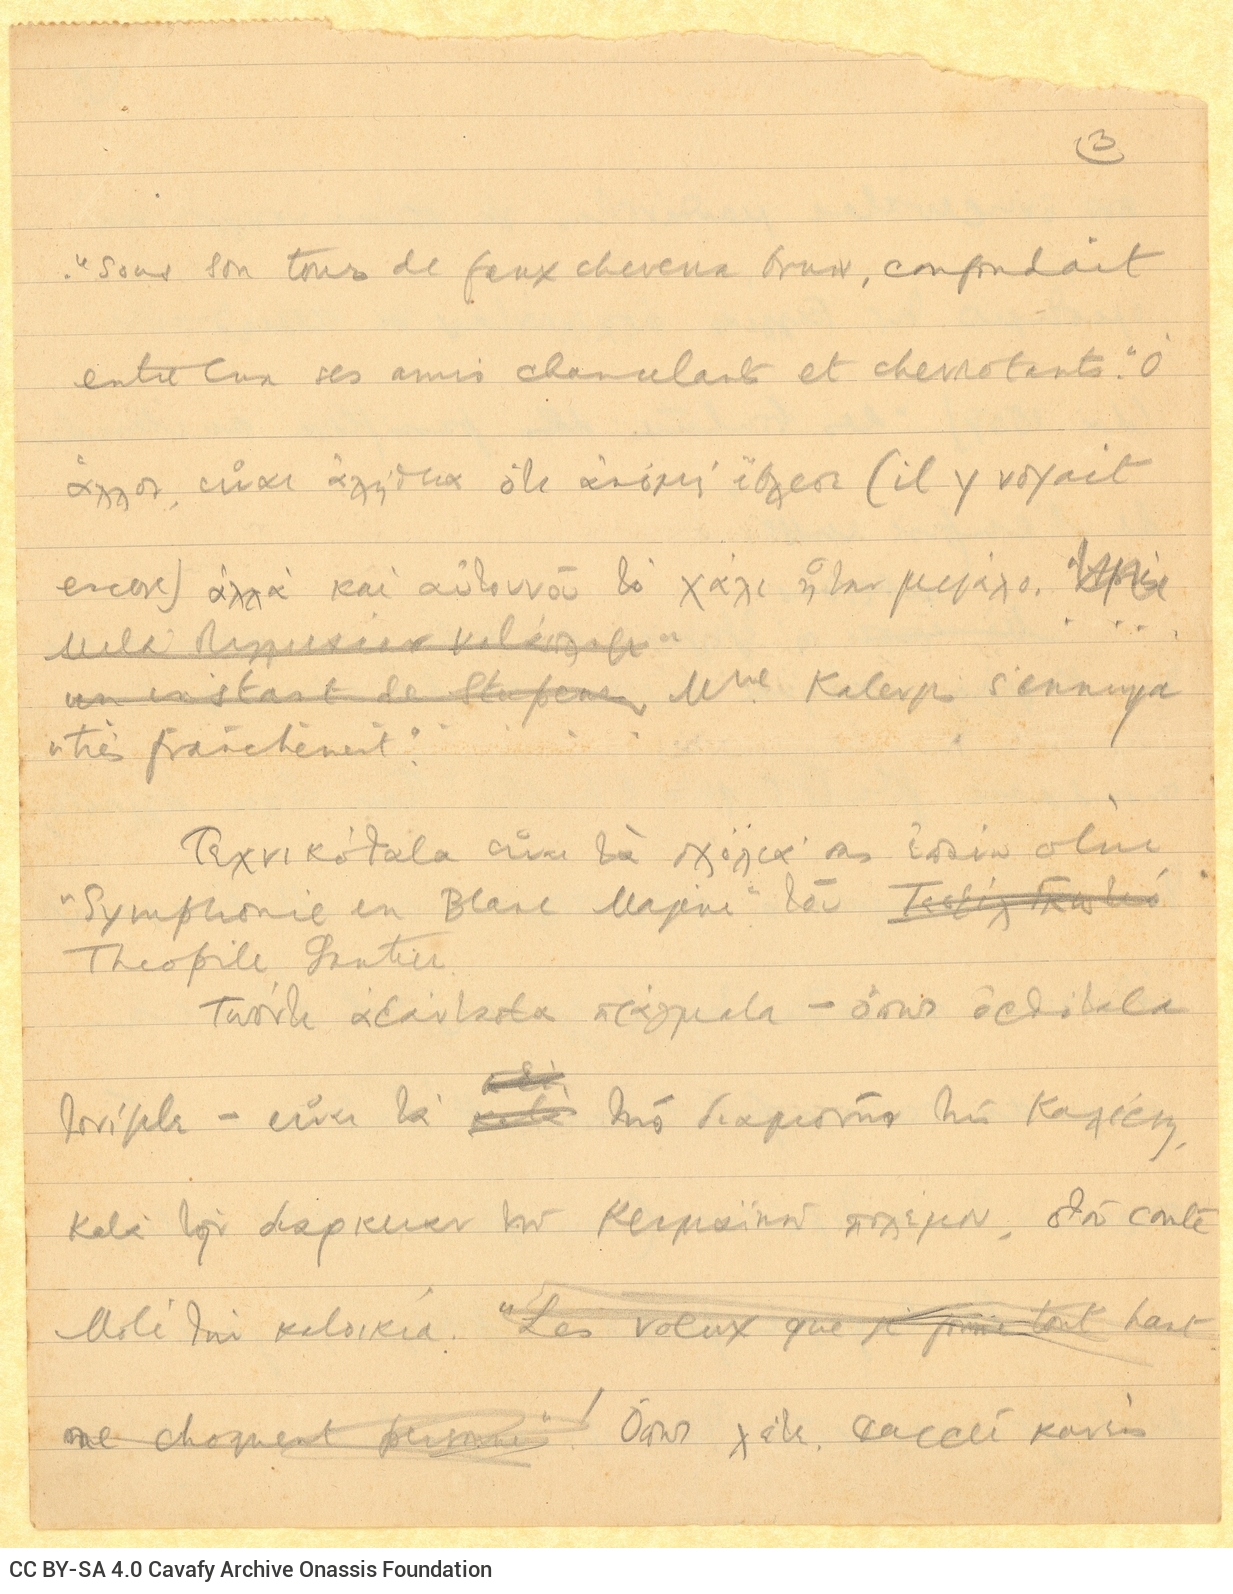 Χειρόγραφο σχέδιο επιστολής του Καβάφη σε τρία διαγραμμισμένα φύλλ�